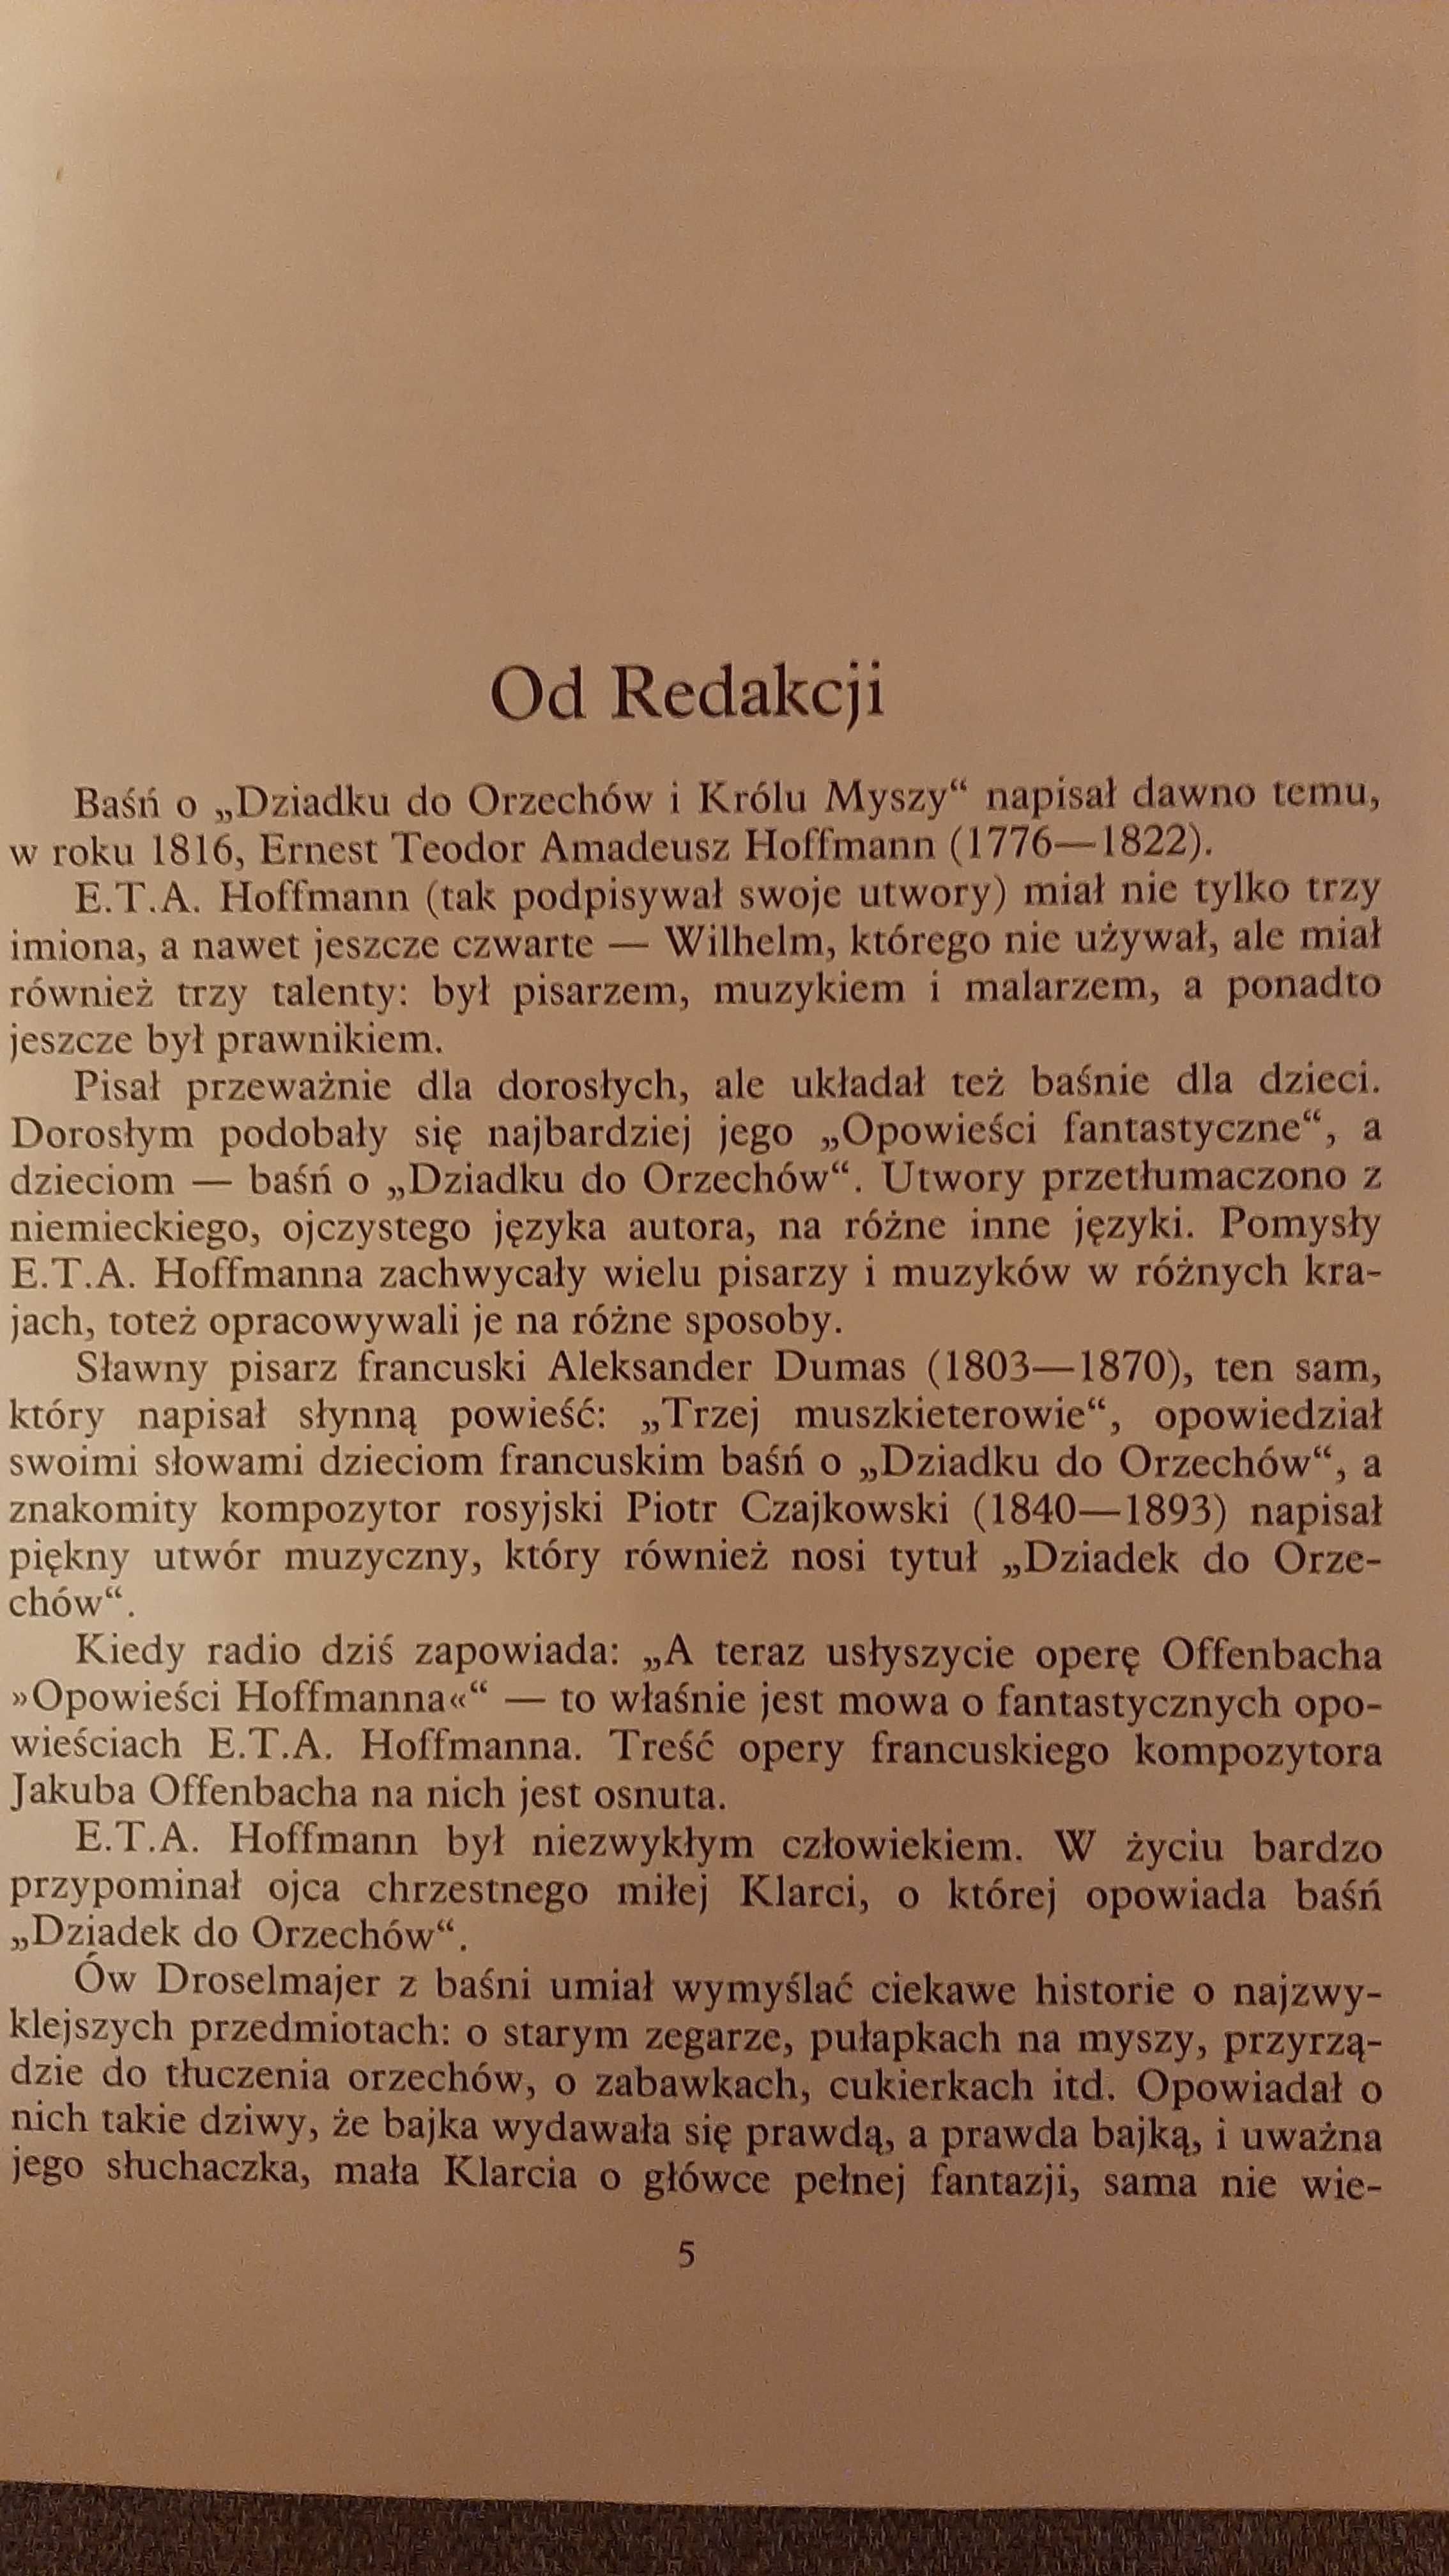 Hoffmann E.T.A. Dziadek do orzechów 1988 il. Bożena Truchanowska